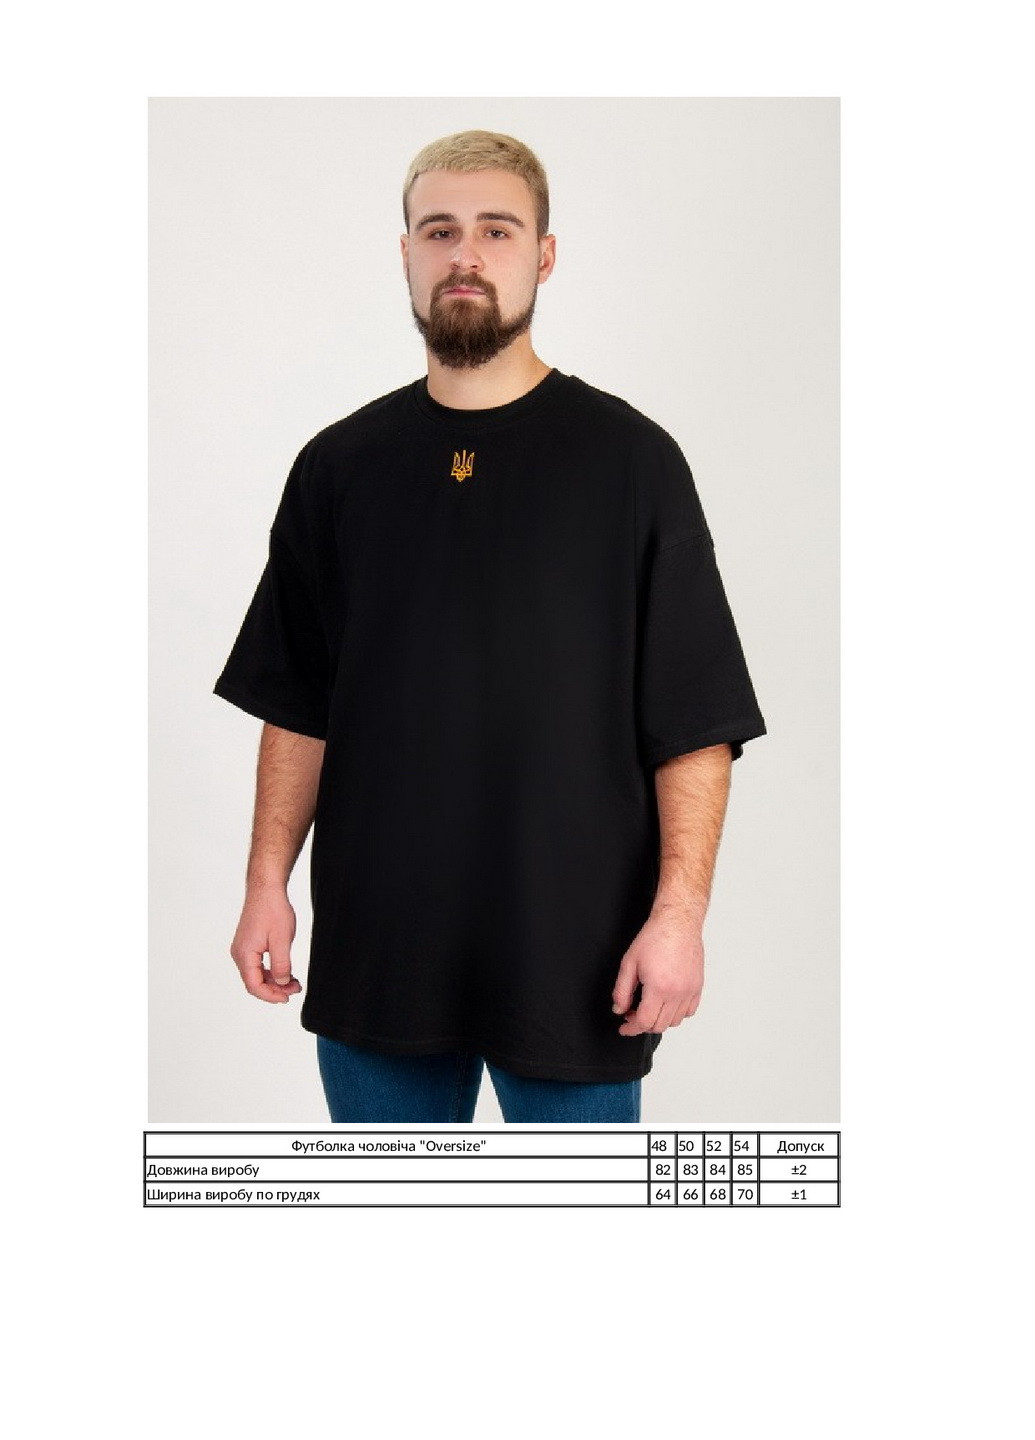 Черная футболка мужская "оversize" KINDER MODE